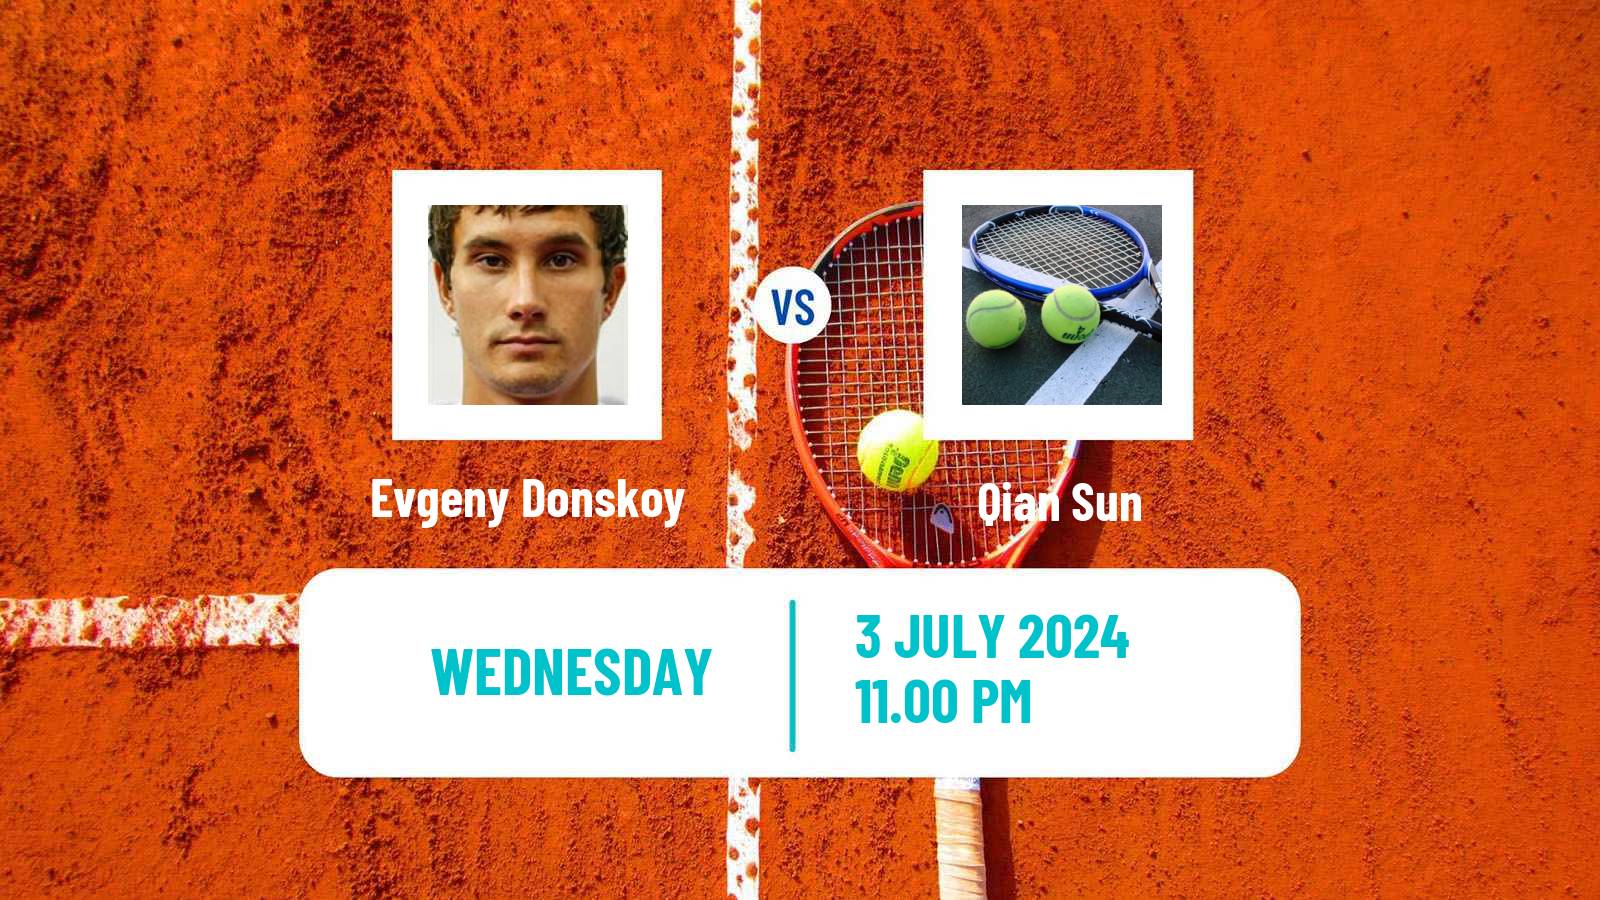 Tennis ITF M15 Tianjin 2 Men Evgeny Donskoy - Qian Sun